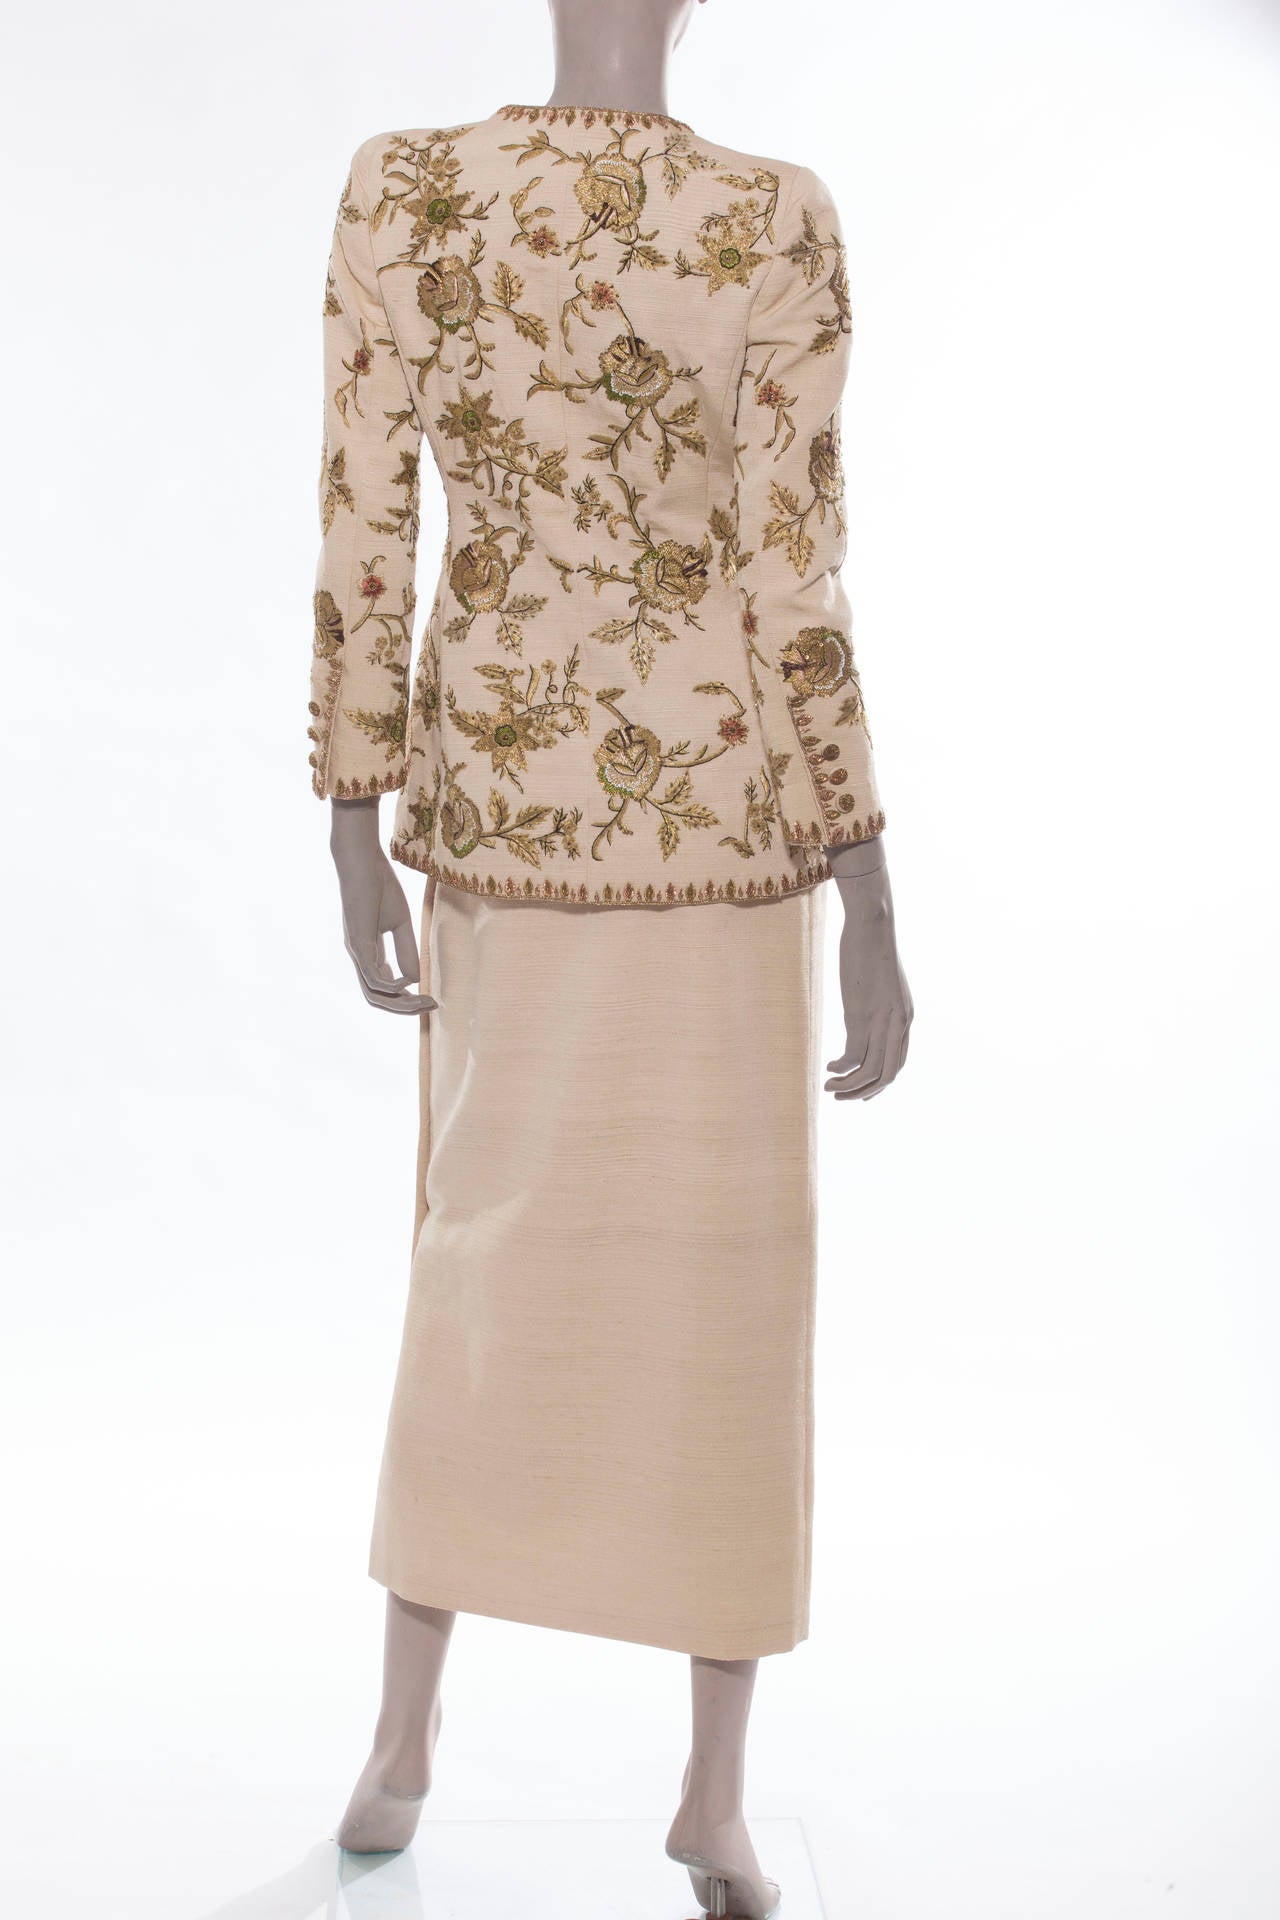 Beige Oscar de la Renta Button Front Lesage Embroidered Skirt Suit, Circa 1990's